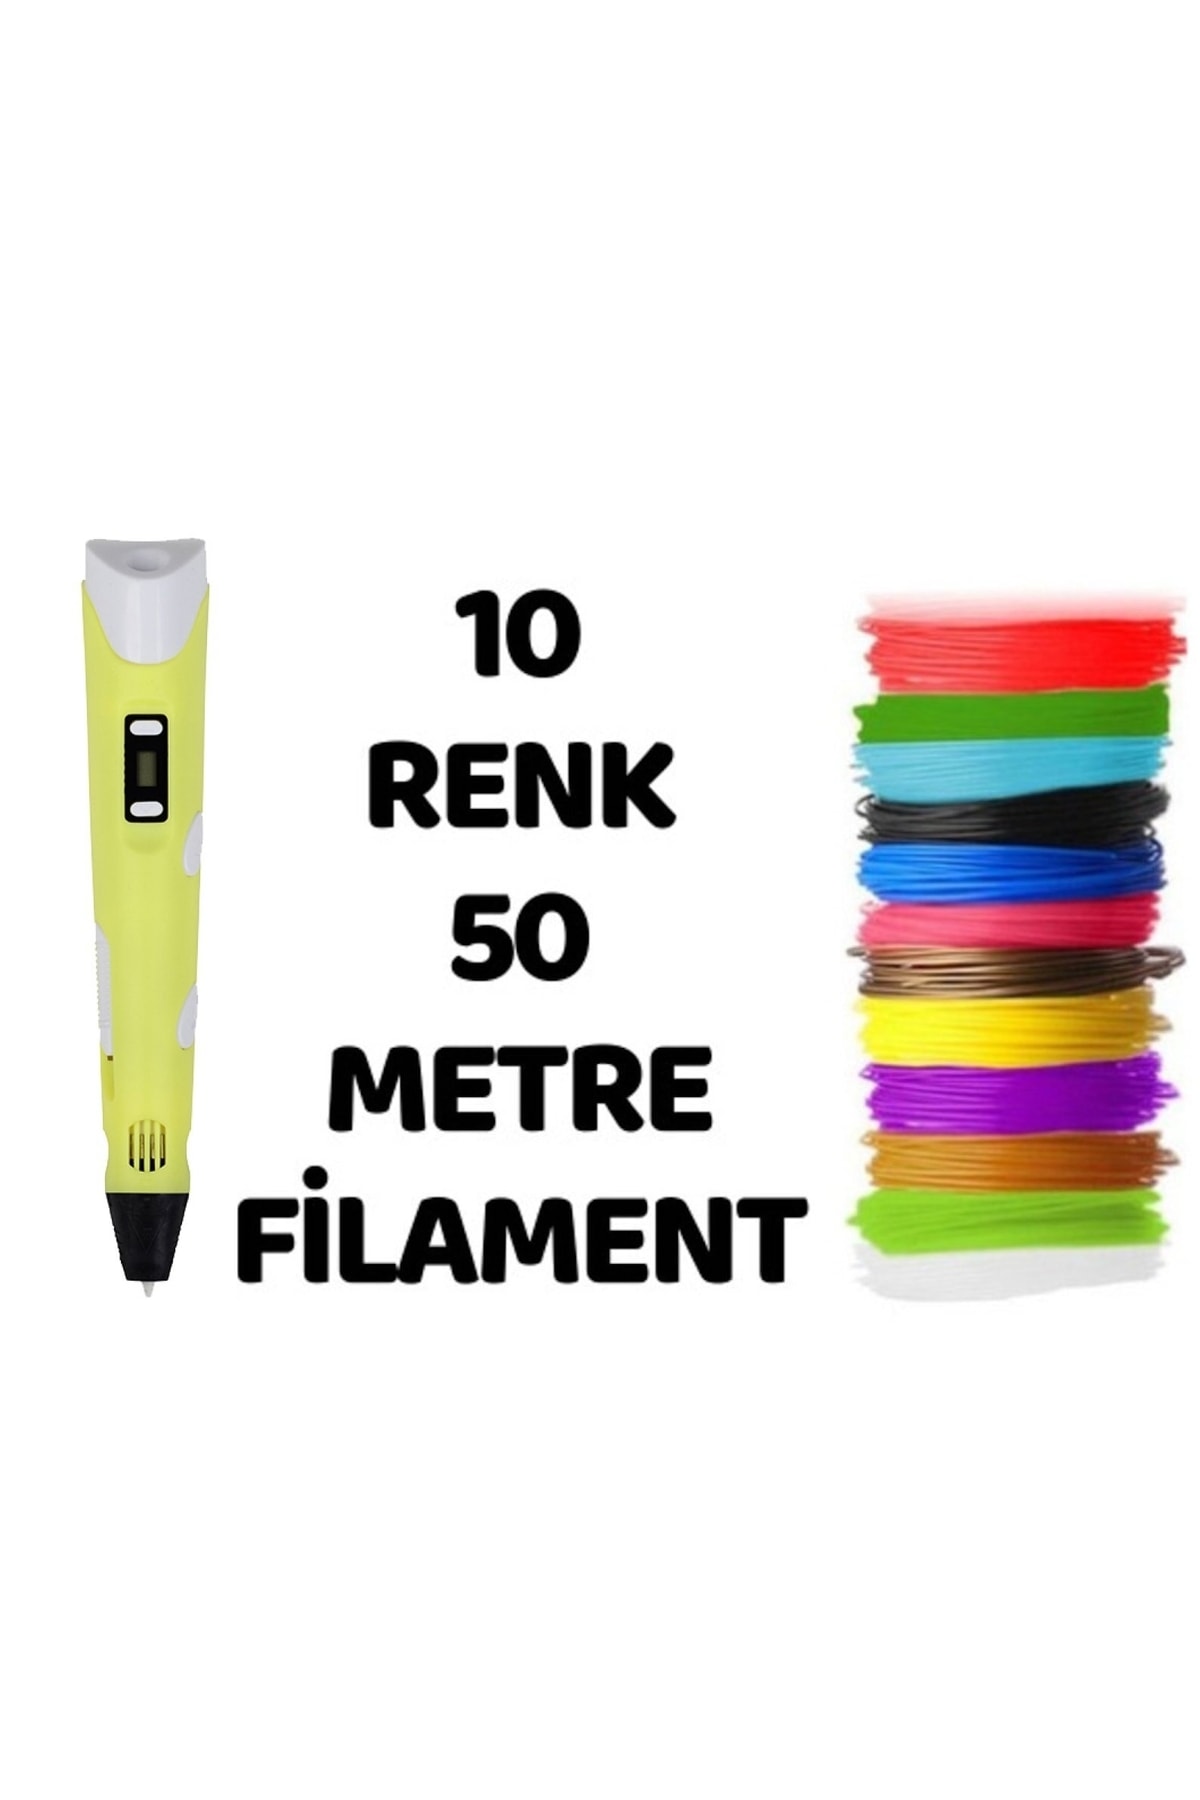 SolinpaTech Sarı 3d Pen Üç Boyutlu Yazıcı Kalem 5 Metre 10 Adet Filement Ve Adaptor Ile Birlikte (50 METRE)